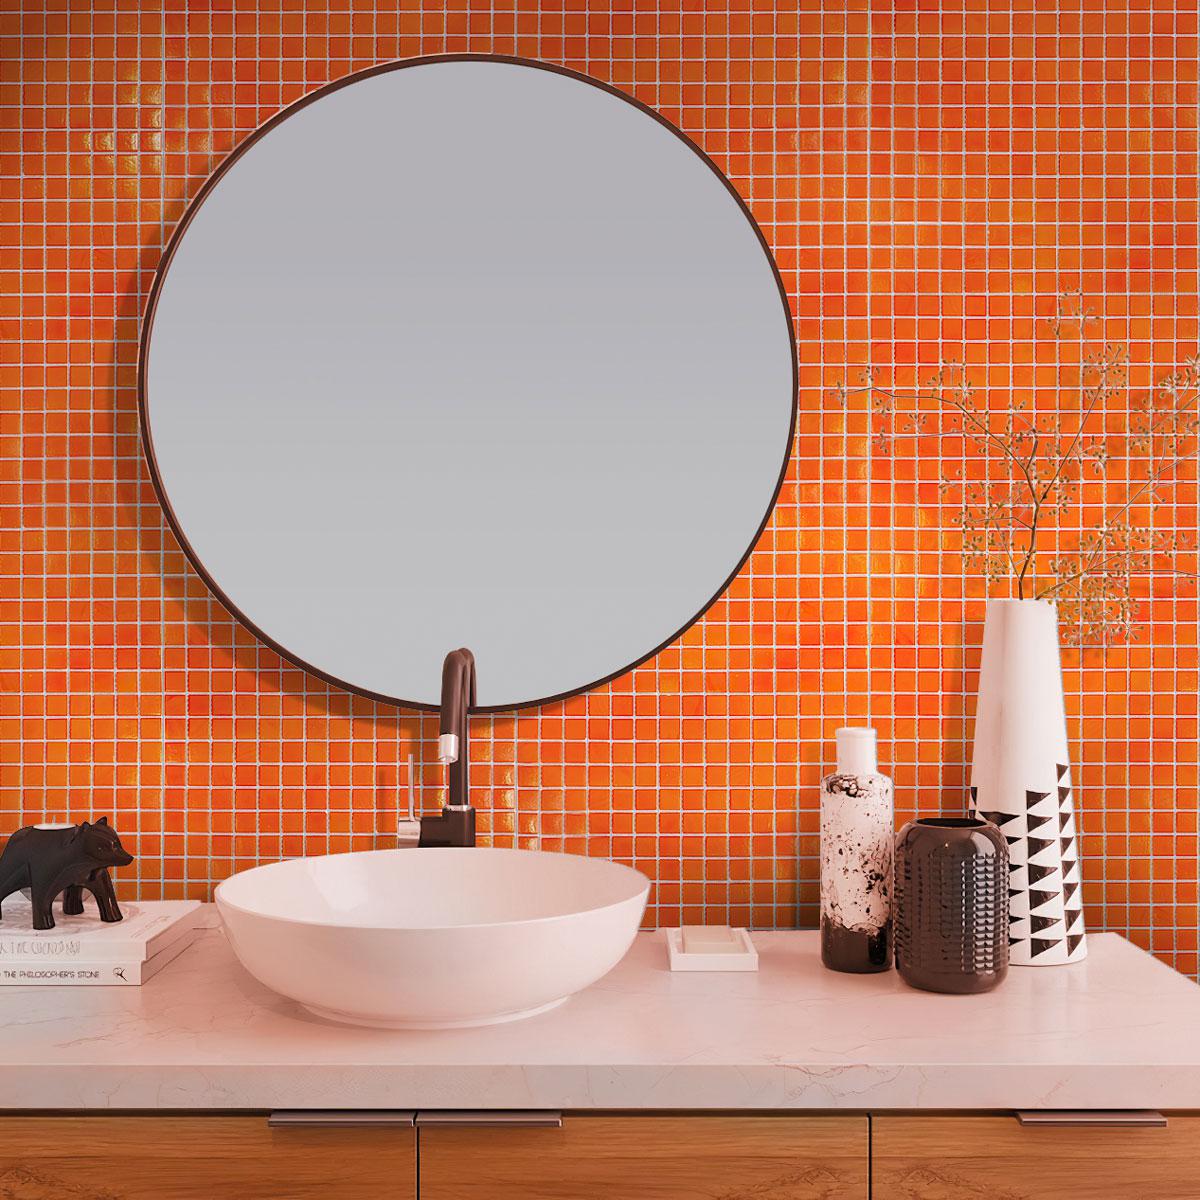 Tiger Orange Squares Glass Pool Tile Bathroom Backsplash